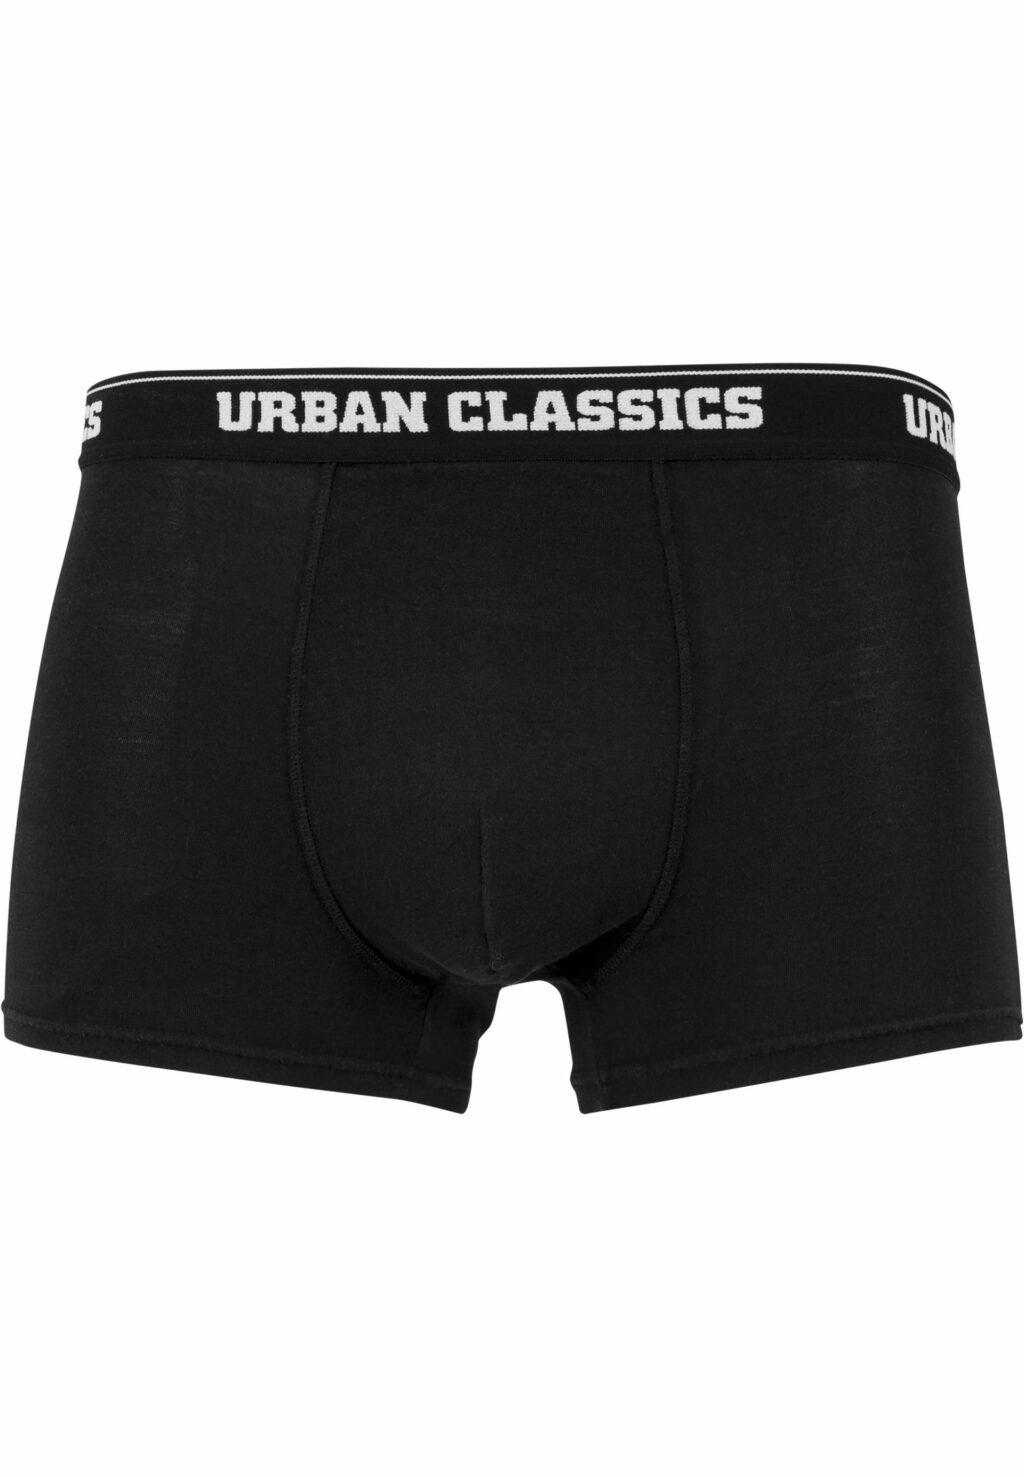 Urban Classics Boxer Shorts 5-Pack ban.aop+brand.aop+cha+blk+wht TB3846